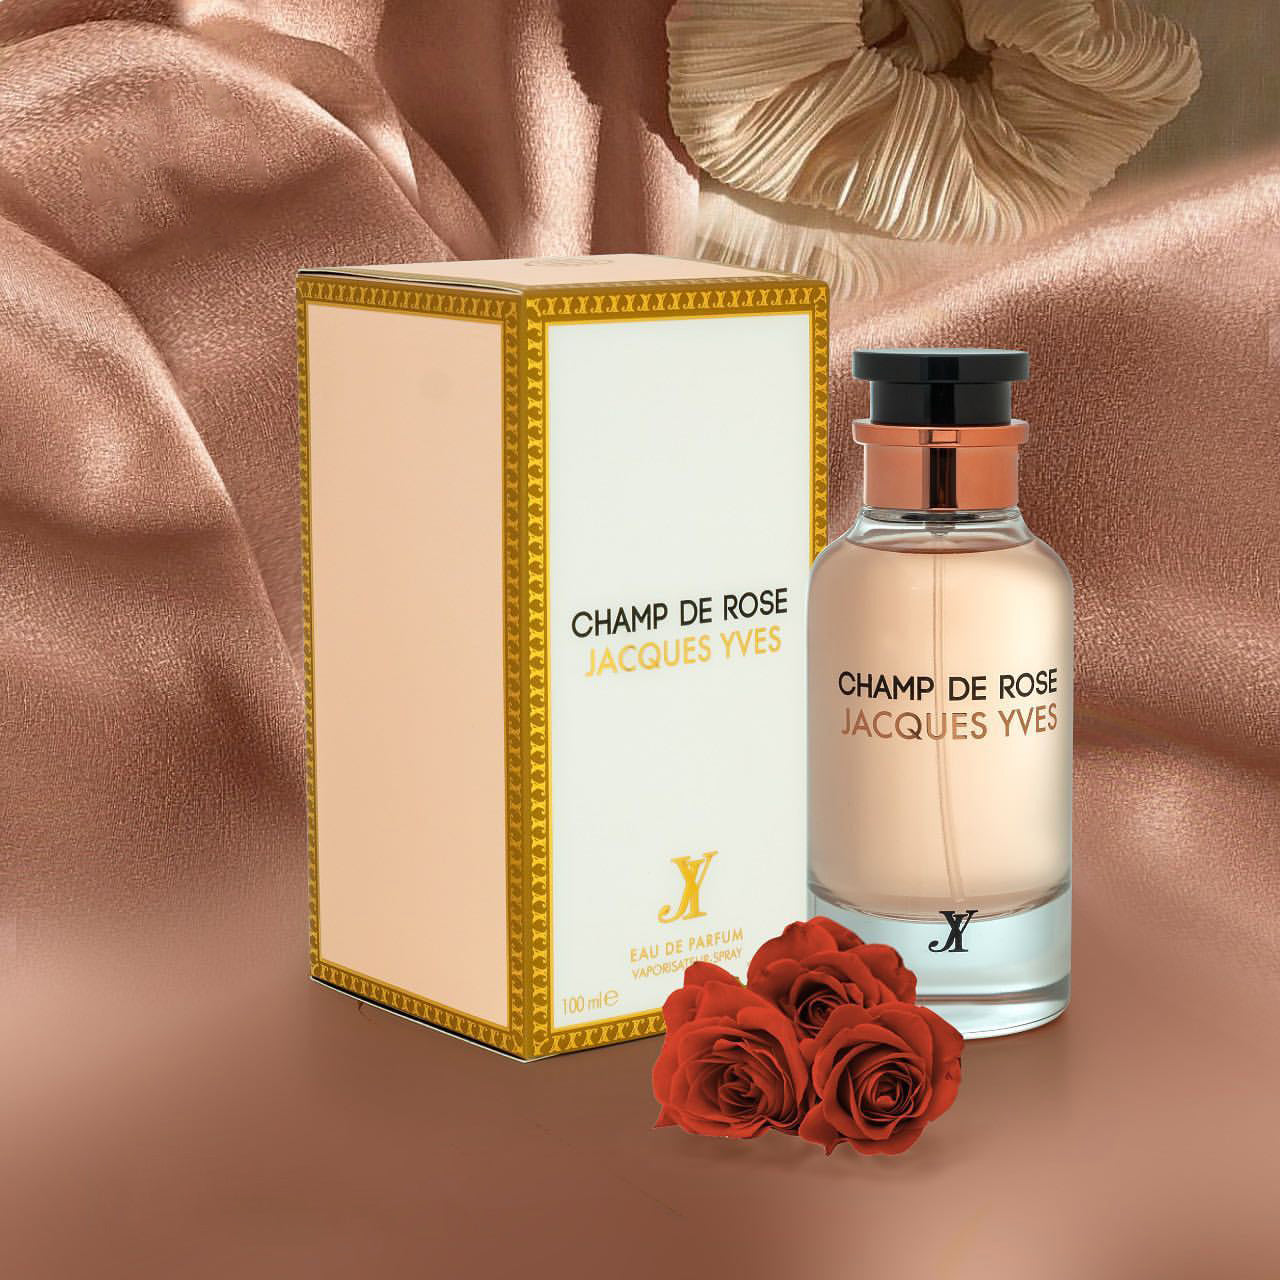 Fragrance World Champ De Rose Jacques Yves 100 ml Eau De Parfum Sweet scent  - Perfume Land